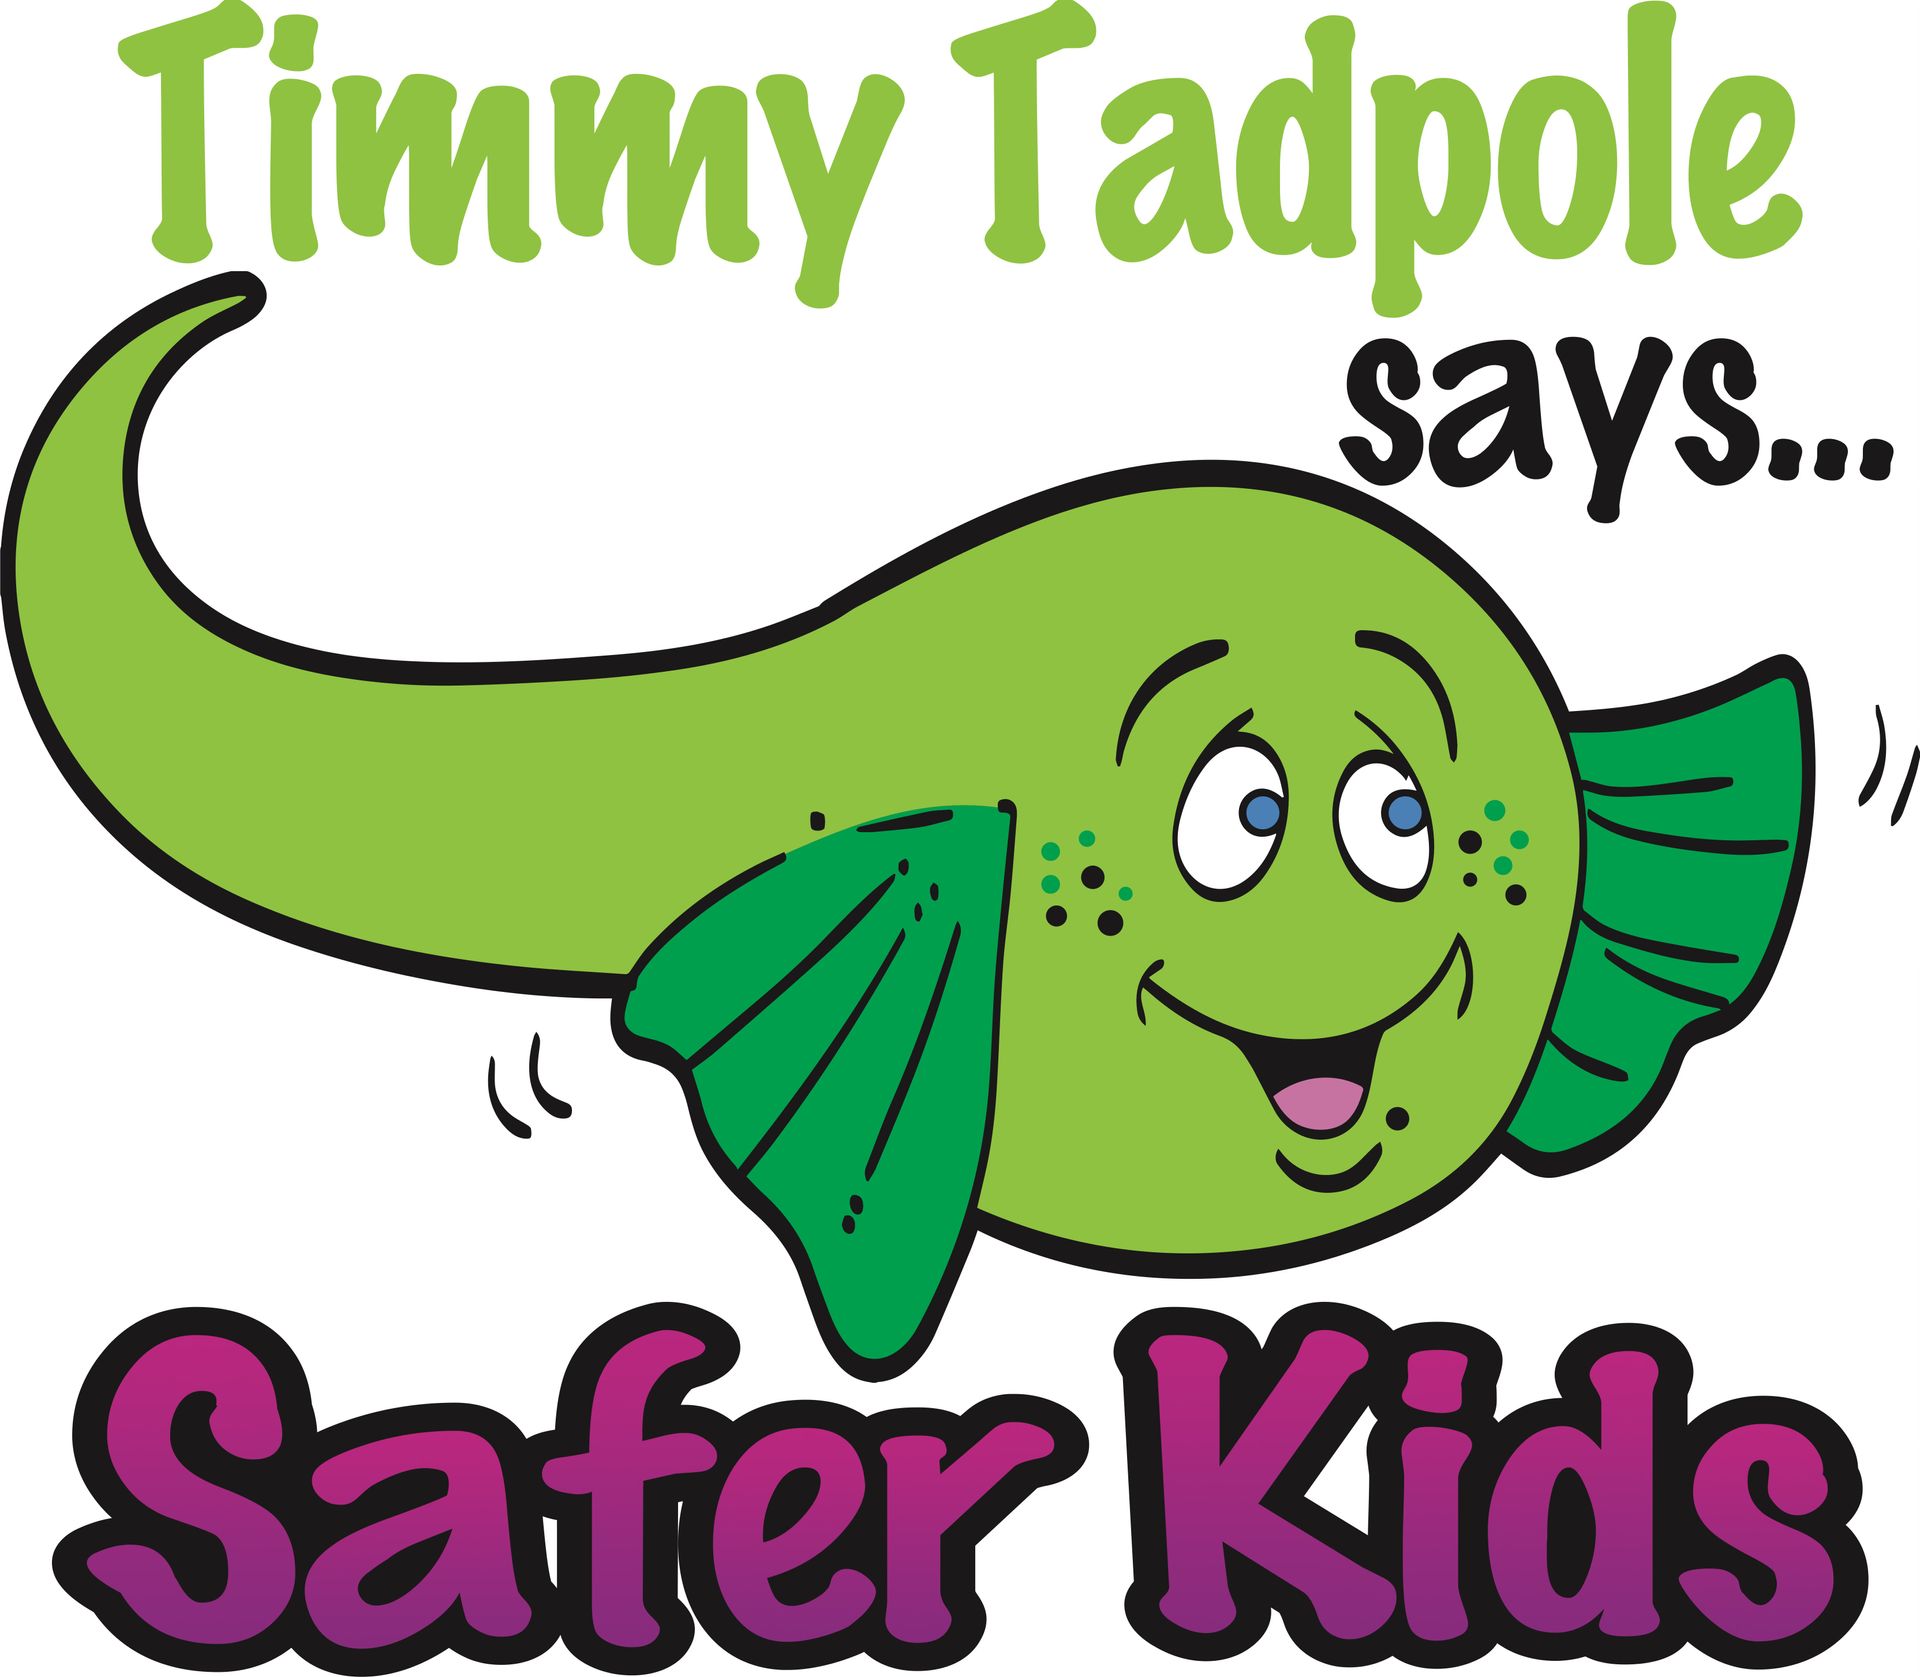 Un logo de timmy tadpole dice niños más seguros